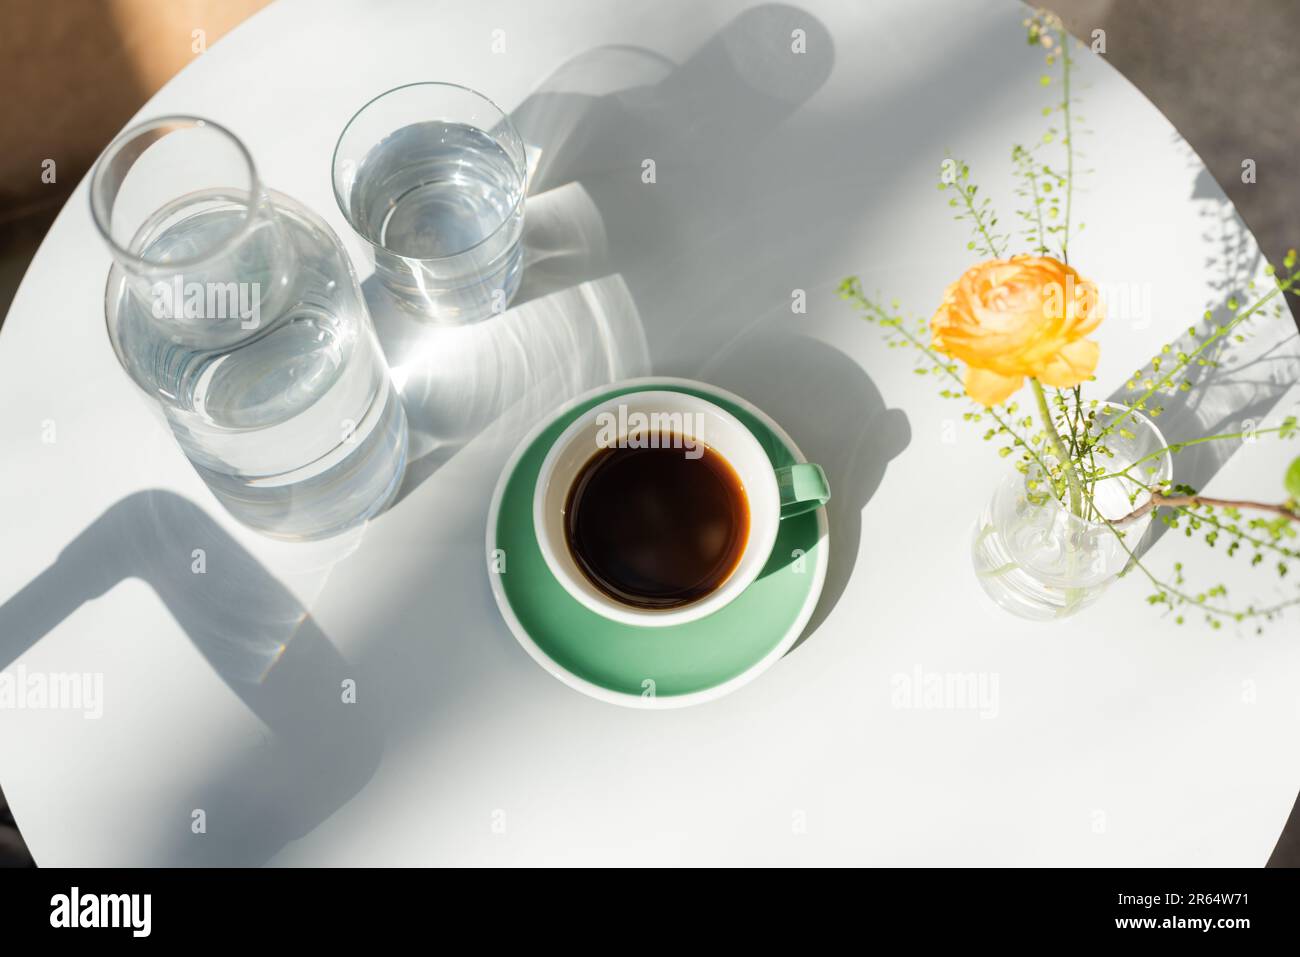 vista dall'alto di vetro e decanter con acqua pura, tazza con caffè nero, piattino, vaso con rosa gialla e piante verdi su tavola rotonda bianca al mattino Foto Stock